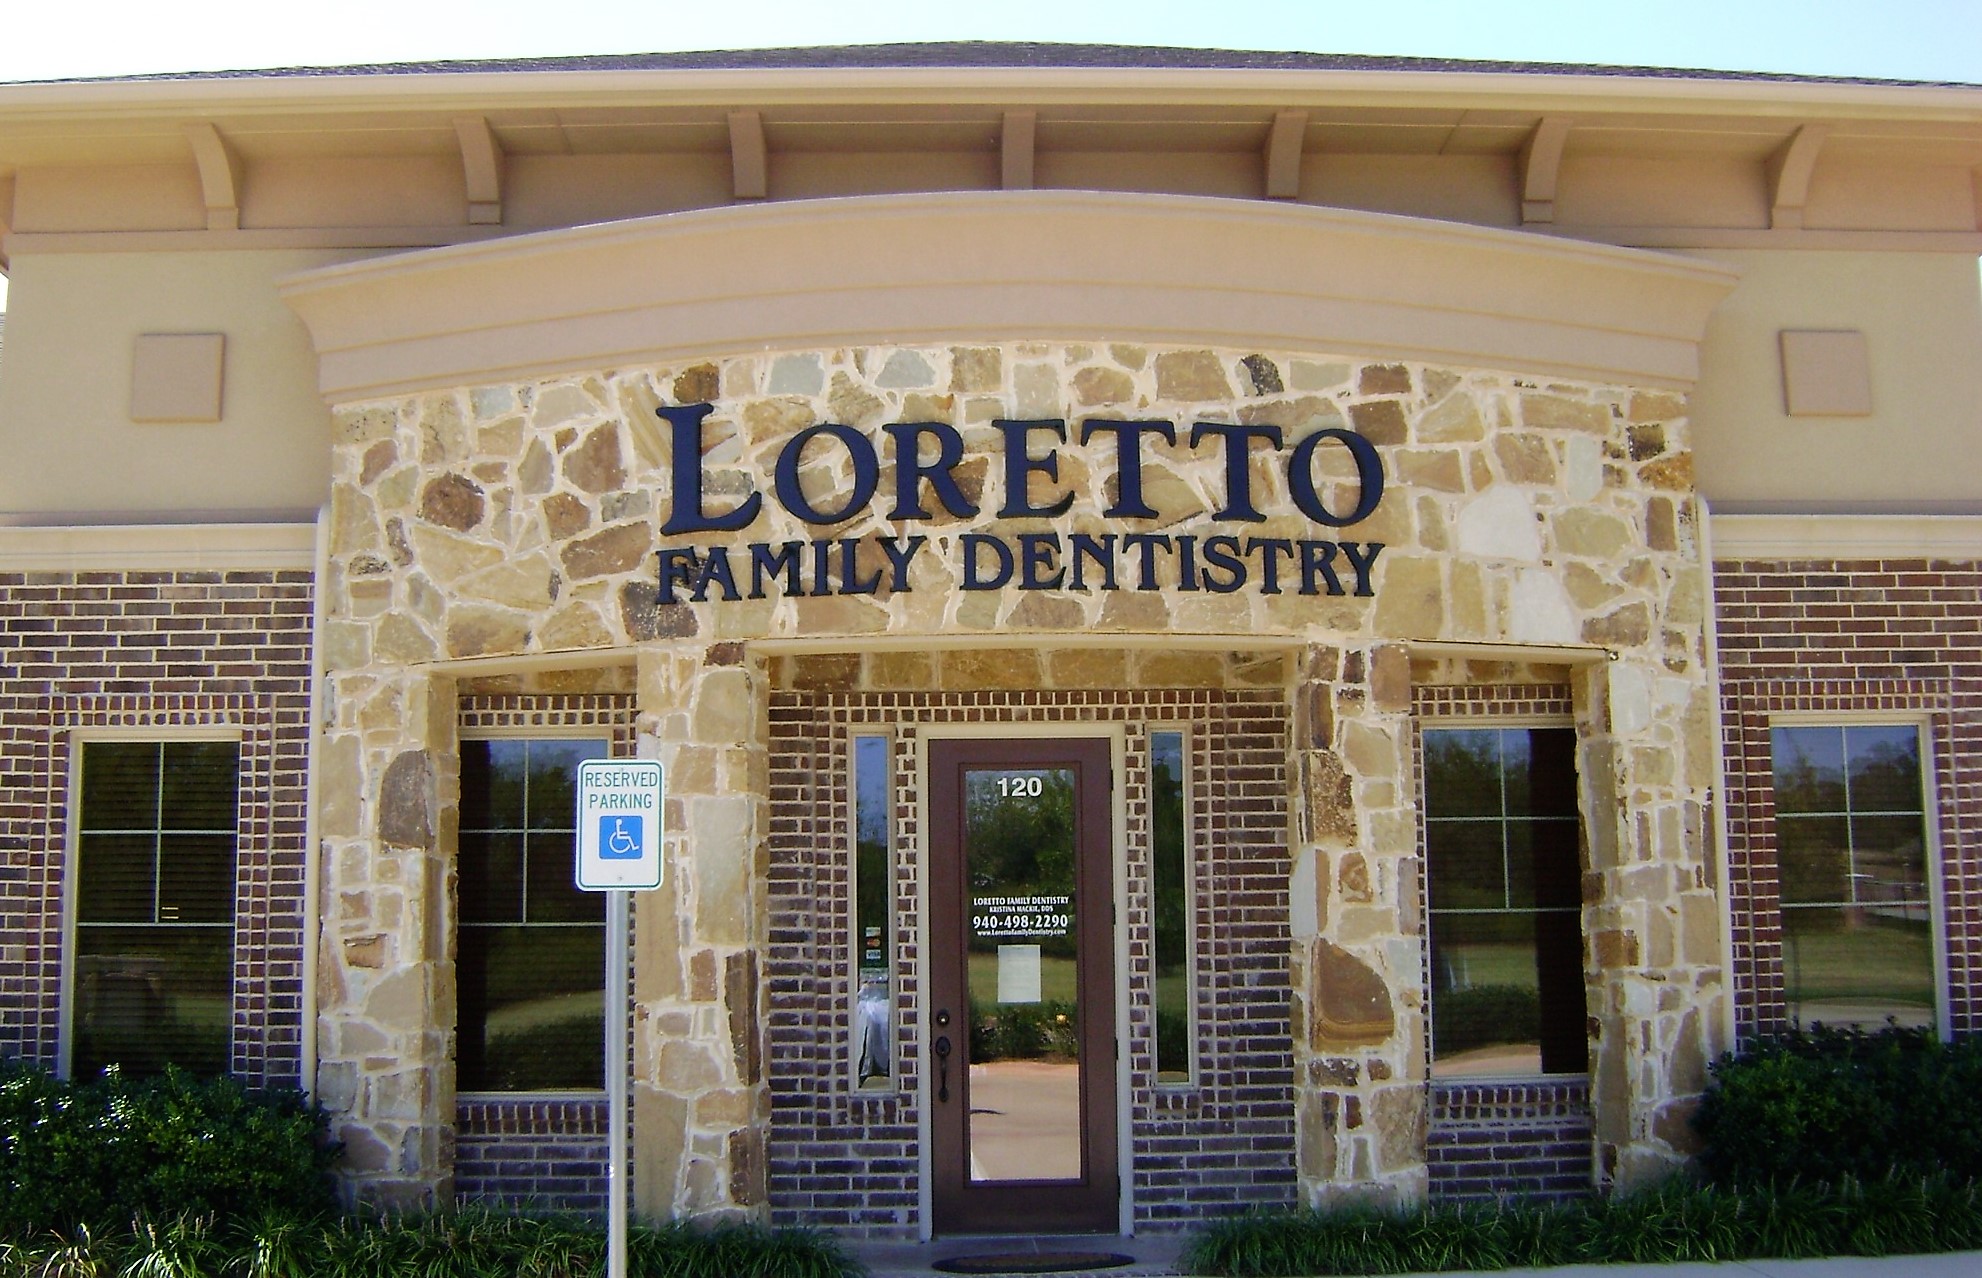 Loretto Family Dentistry